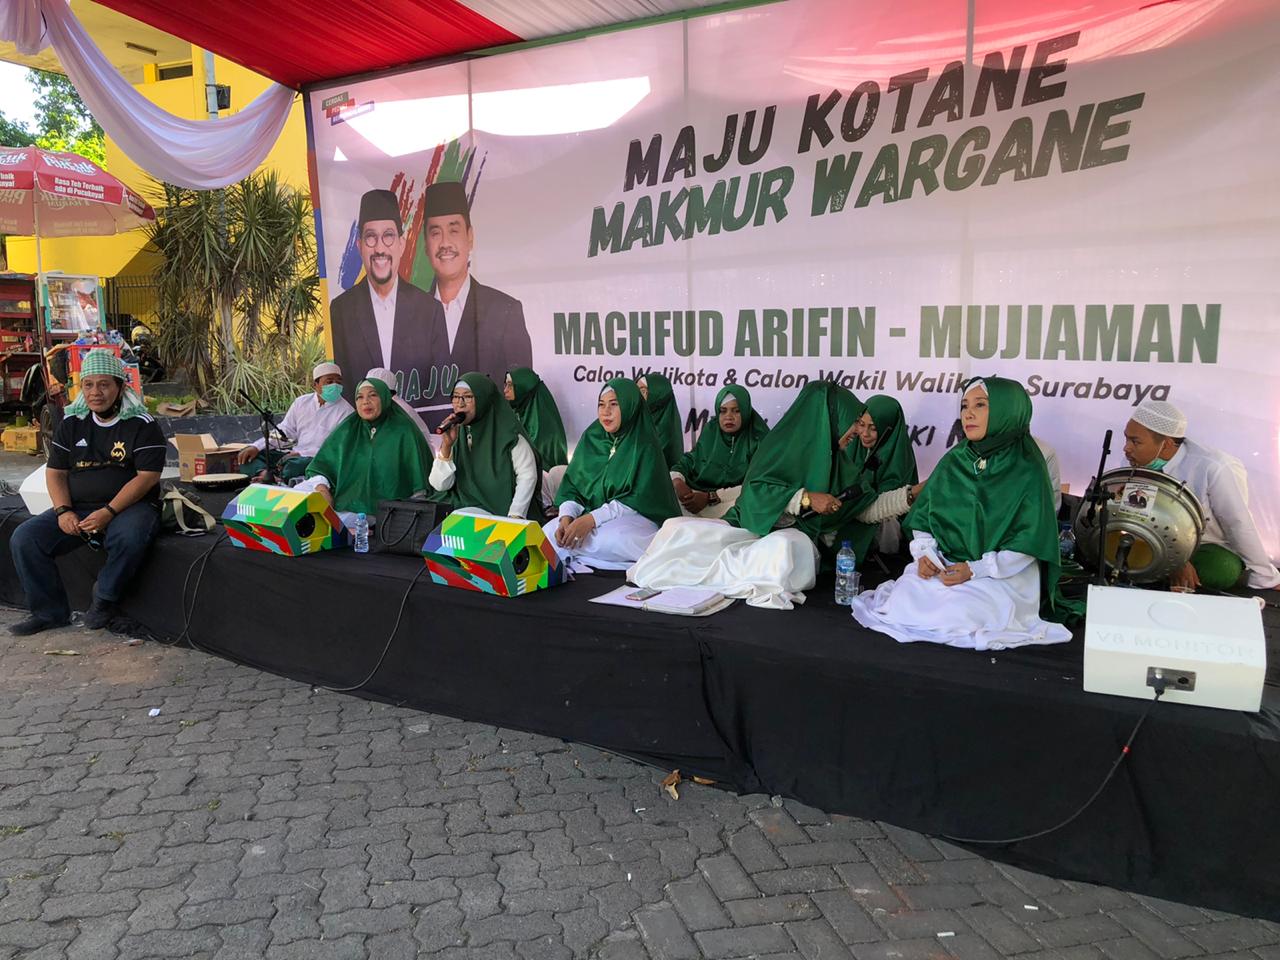 Iringan musik rebana sholawat banjari siap menyambut pasangan Machfud-Mujiaman di KPU Kota Surabaya. (Foto: Andhi/Ngopibareng.id)